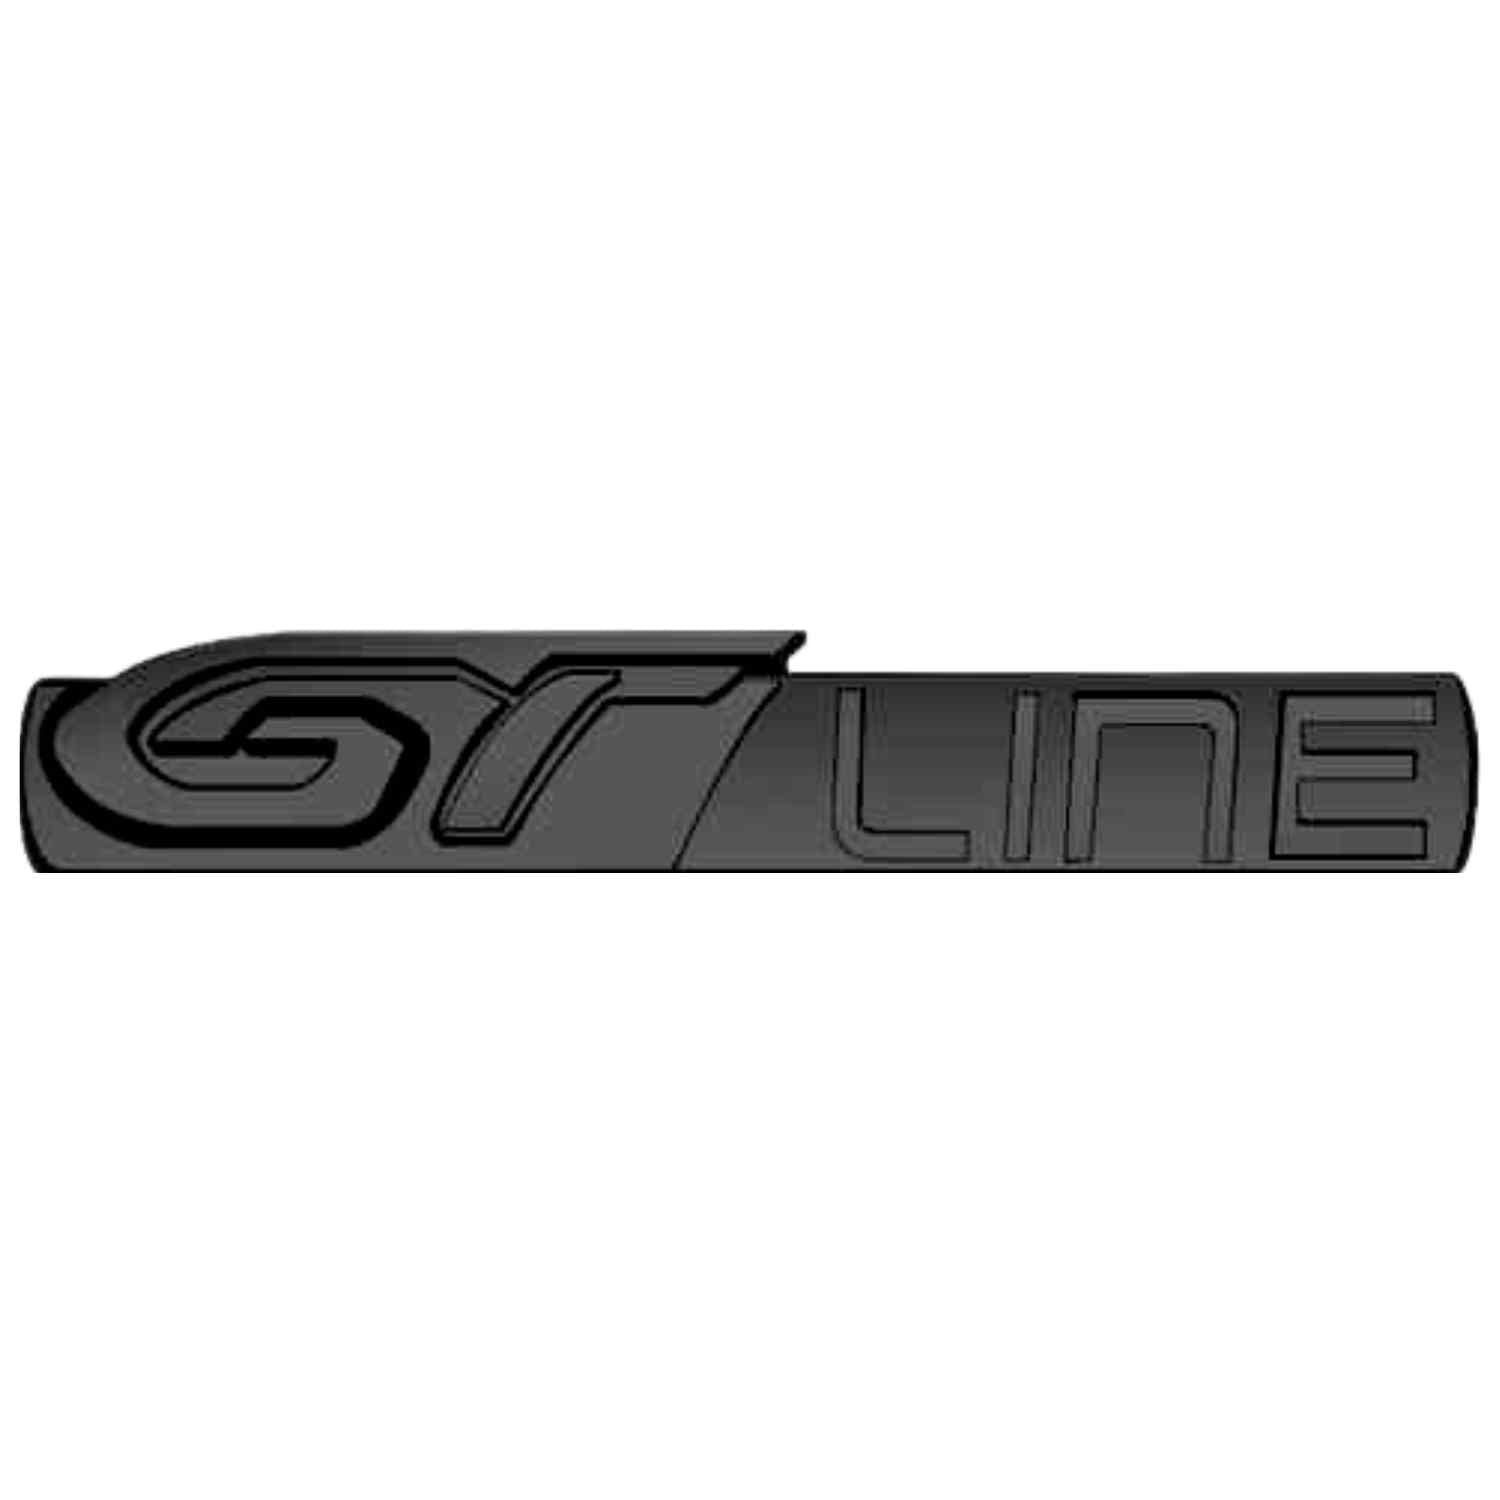 AUTOZOCO GT Line Emblem Emblem GT Line, Insignia GT Line, Aufkleber GT Line, Aufkleber GT Line, passend für Kofferraum, kompatibel mit Peugeot, Material Zinklegierung, 84 mm x 20 mm (schwarz) von AUTOZOCO